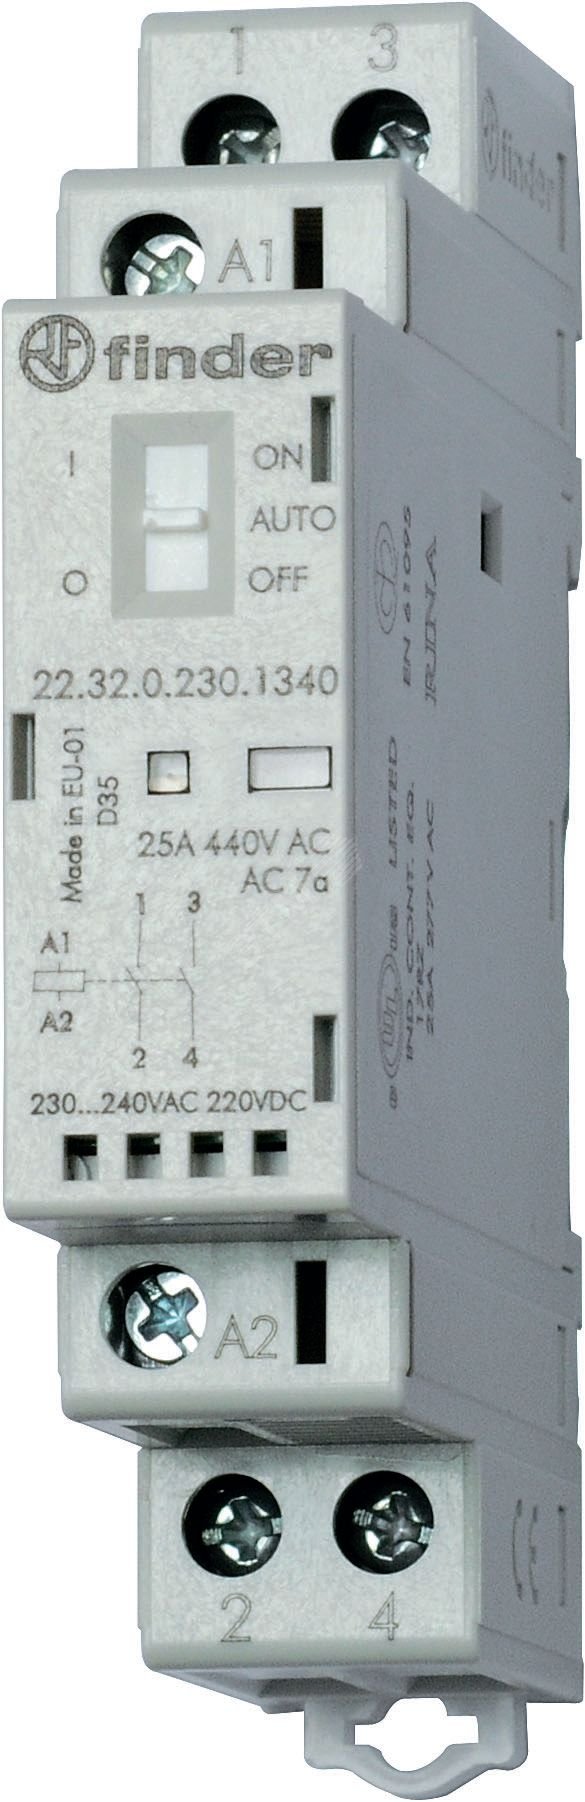 Контактор модульный 1NO+1NC 25А контакты AgNi катушка 120В АС/DC 17.5мм IP20 переключатель Авто-Вкл-Выкл+механический индикатор/LED (1шт) 22.32.0.120.1540PAS FINDER - превью 2